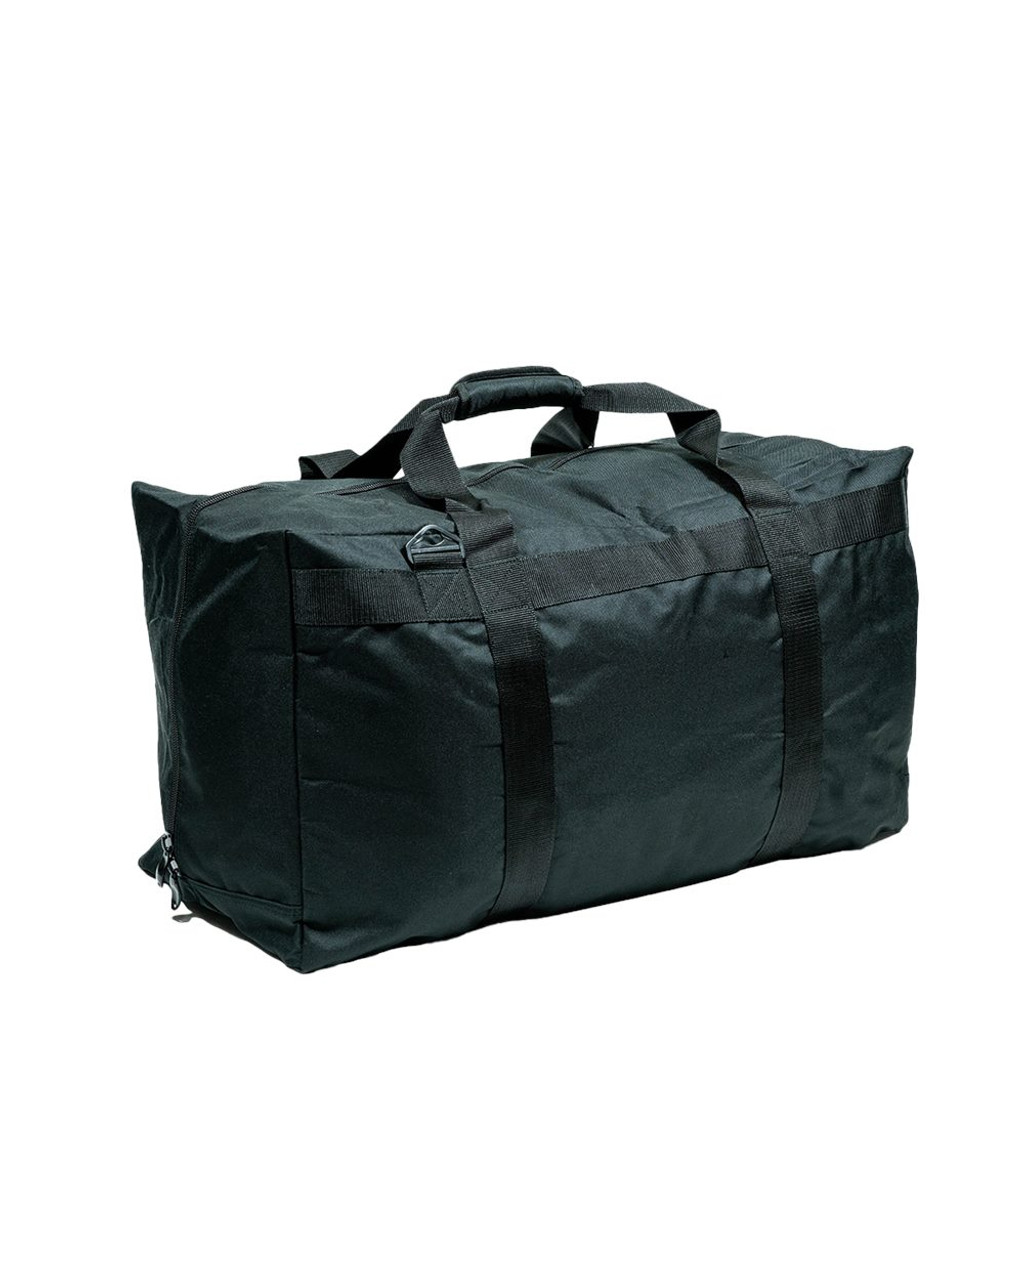 XL Mega Opening Shoulder Pad / Sports Equipment Bag - SB291614